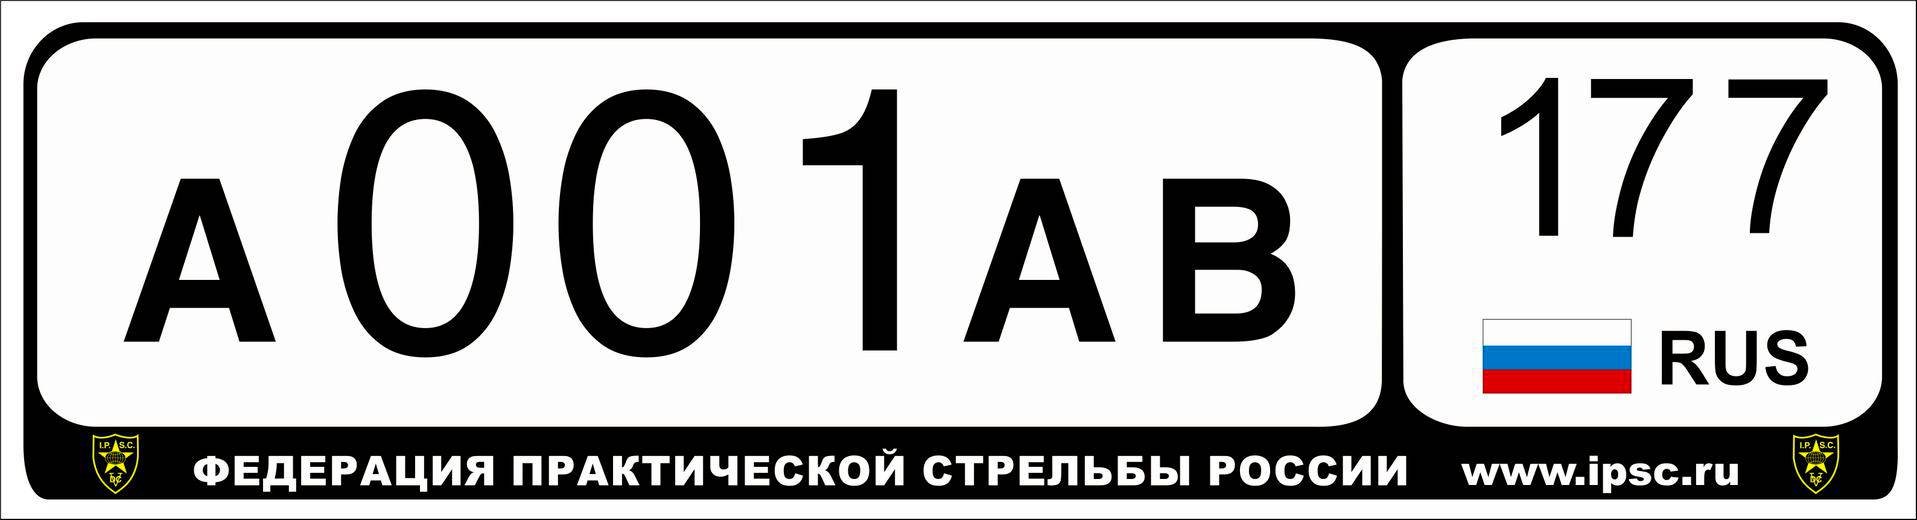 Рф номер москва. Автомобильный номерной знак. Макет автомобильного номера. Российские номерные знаки. Гос номер авто.